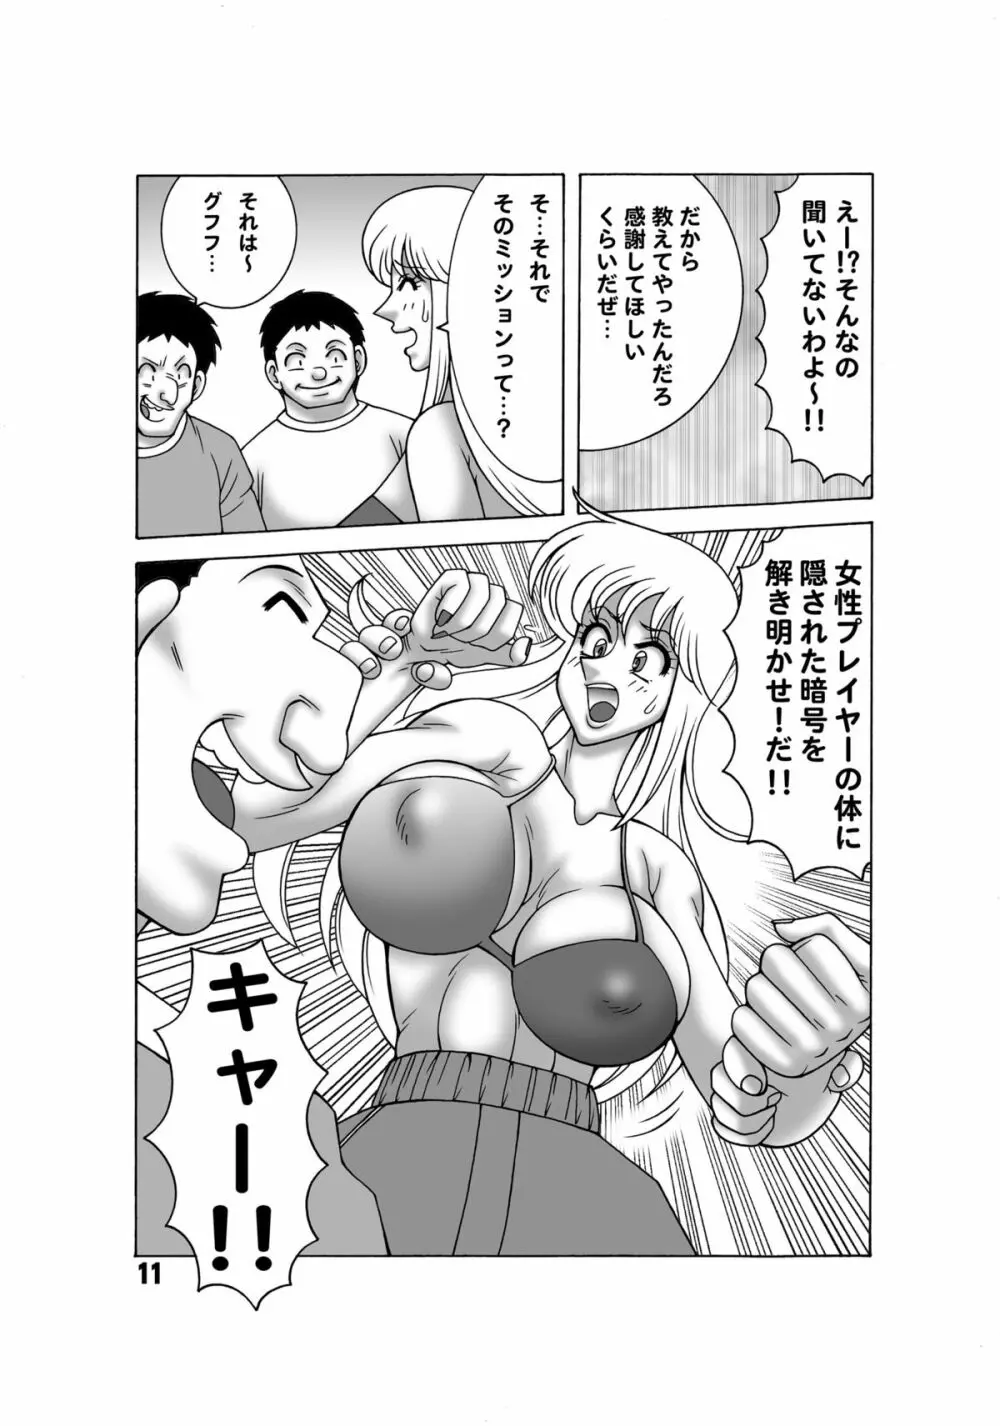 こち亀ダイナマイト 13 - page10